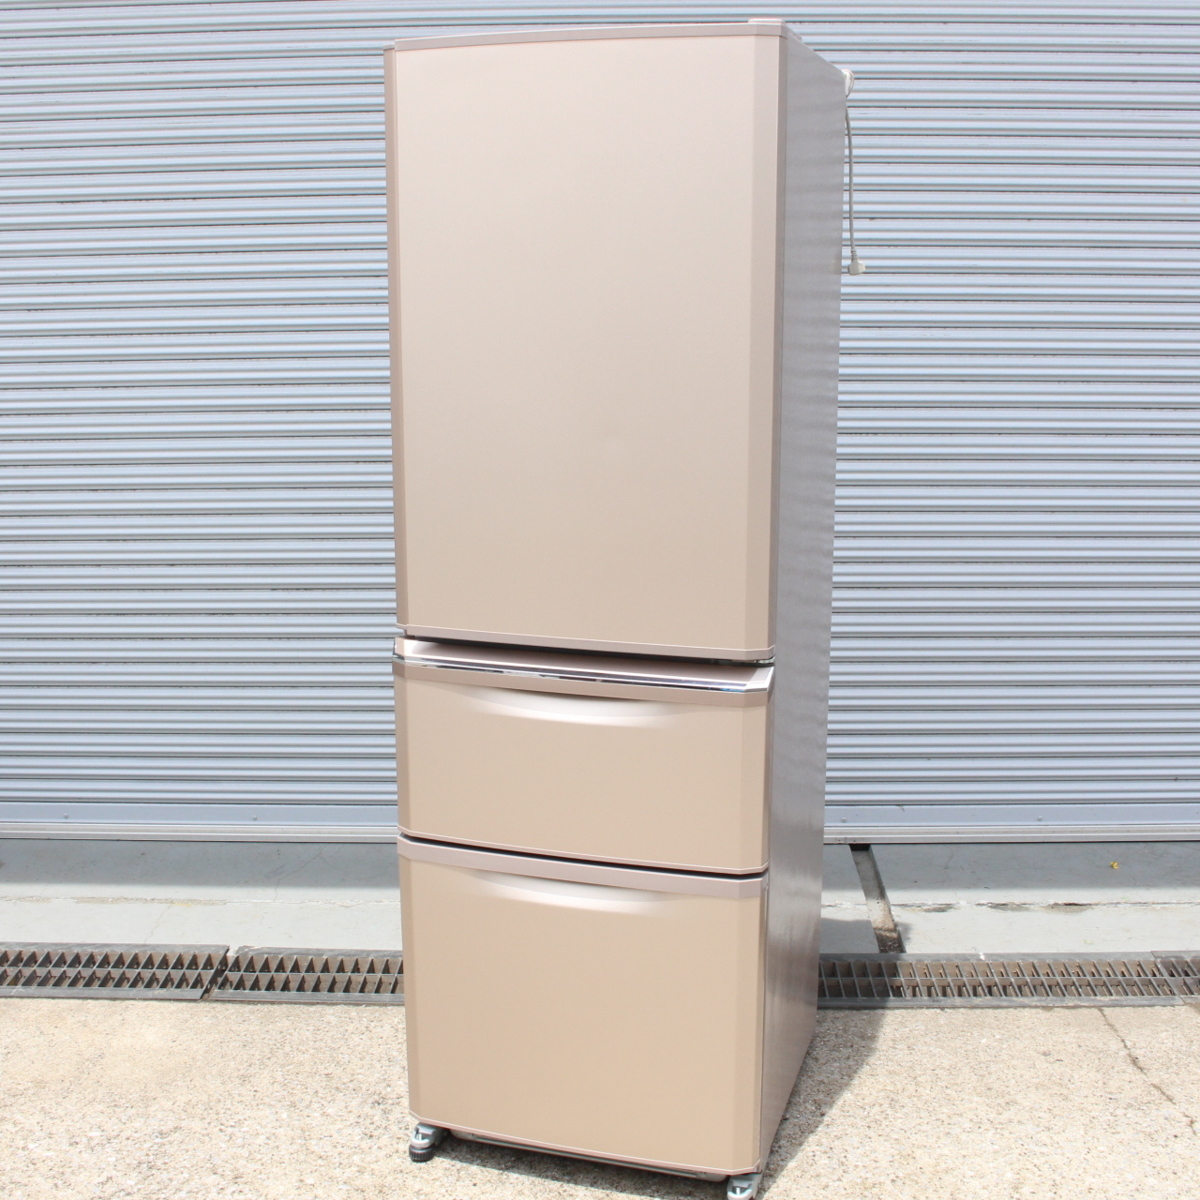 MITSUBISHI 三菱 ノンフロン冷凍冷蔵庫 3ドア MR-C37D-P 370L 18年製